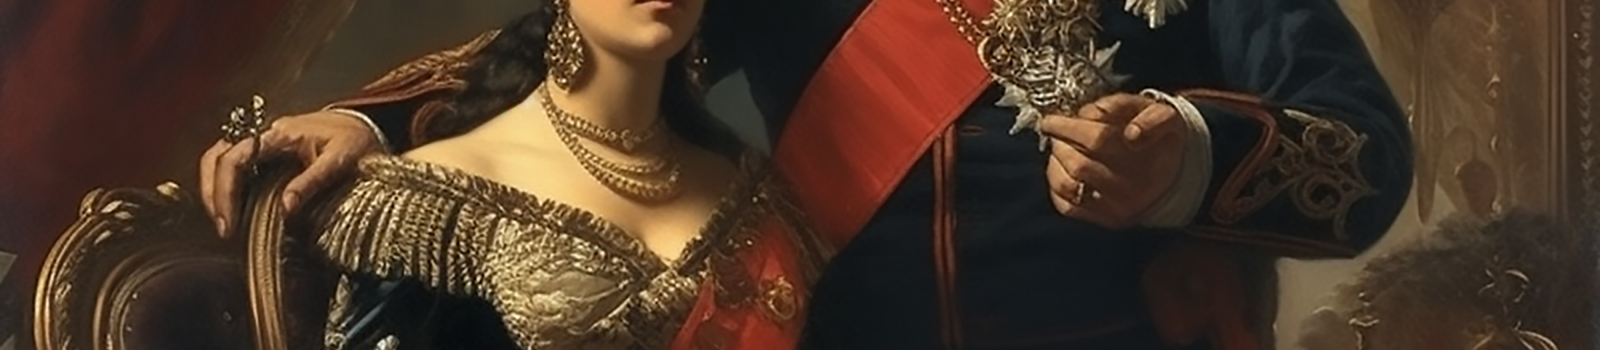 Cleopatra im prachtvollem Kleid